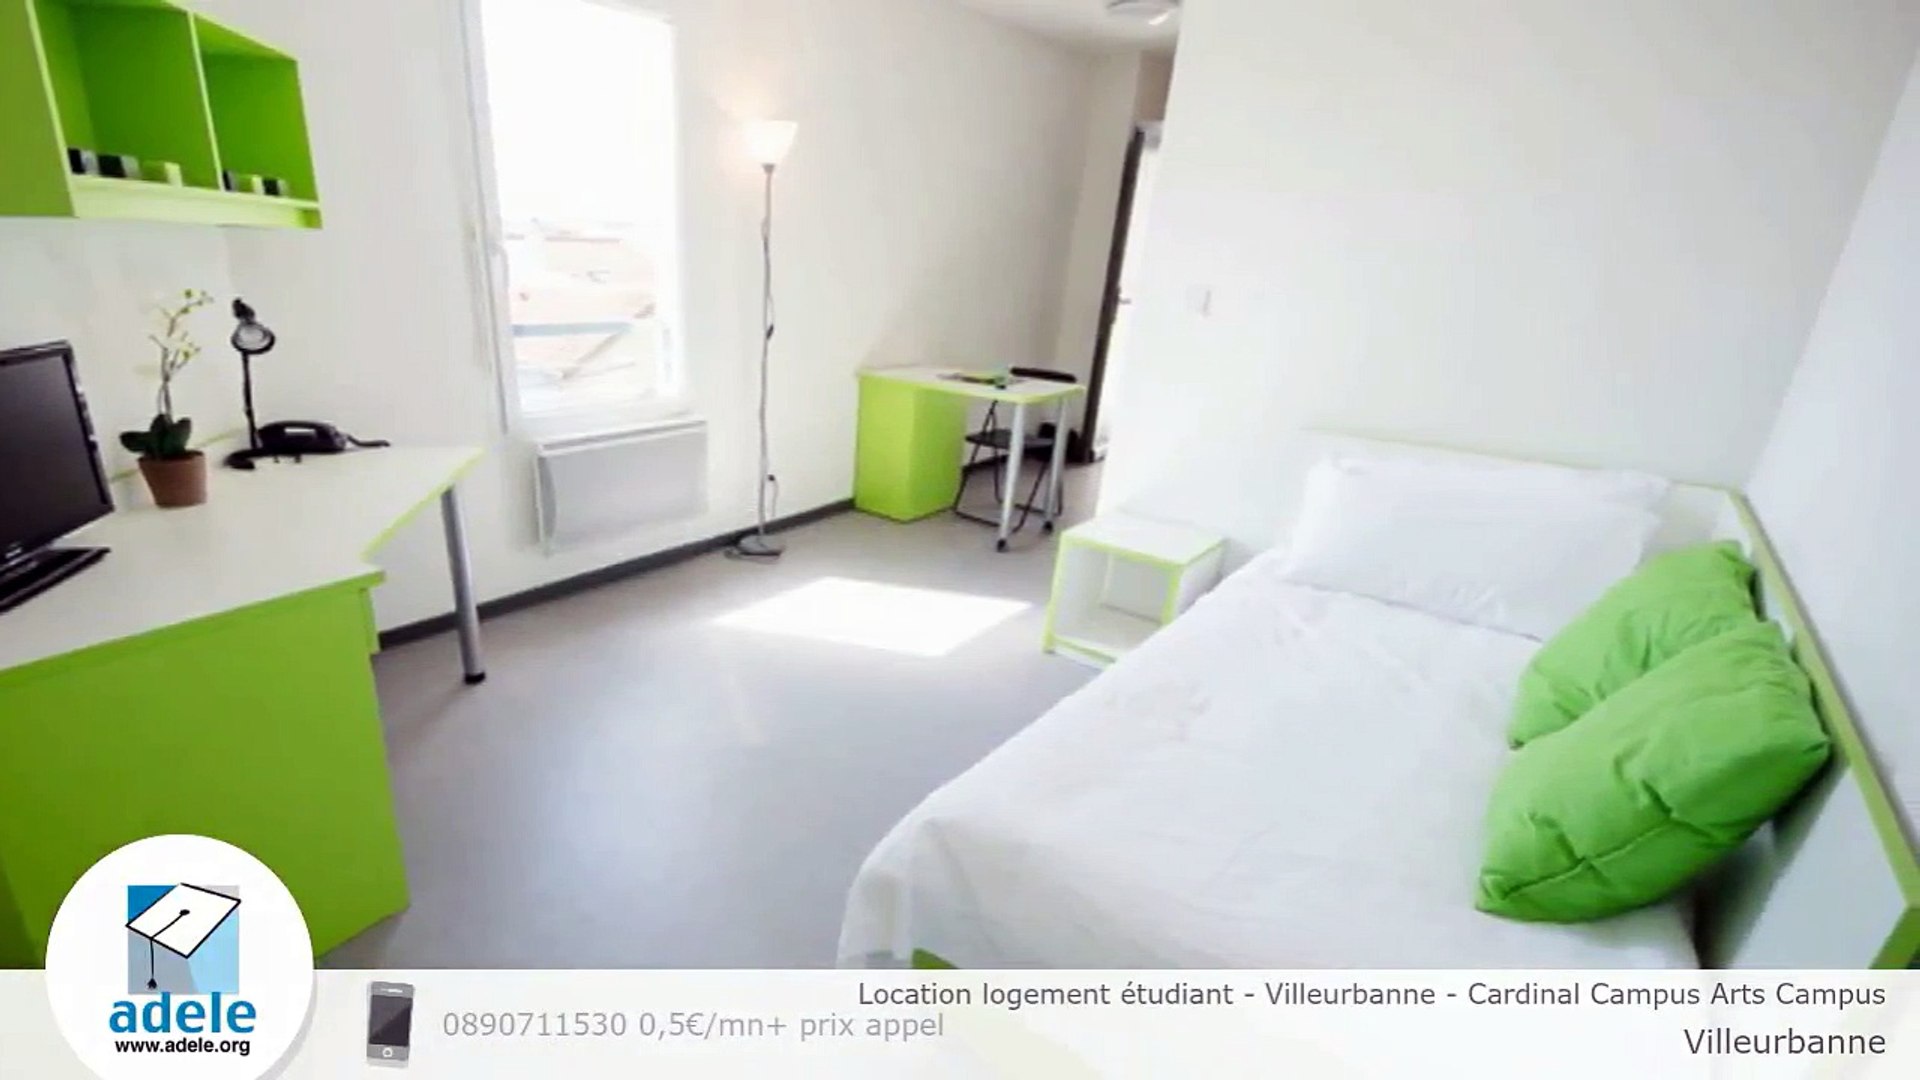 Location logement étudiant - Villeurbanne - Cardinal Campus Arts Campus -  Vidéo Dailymotion